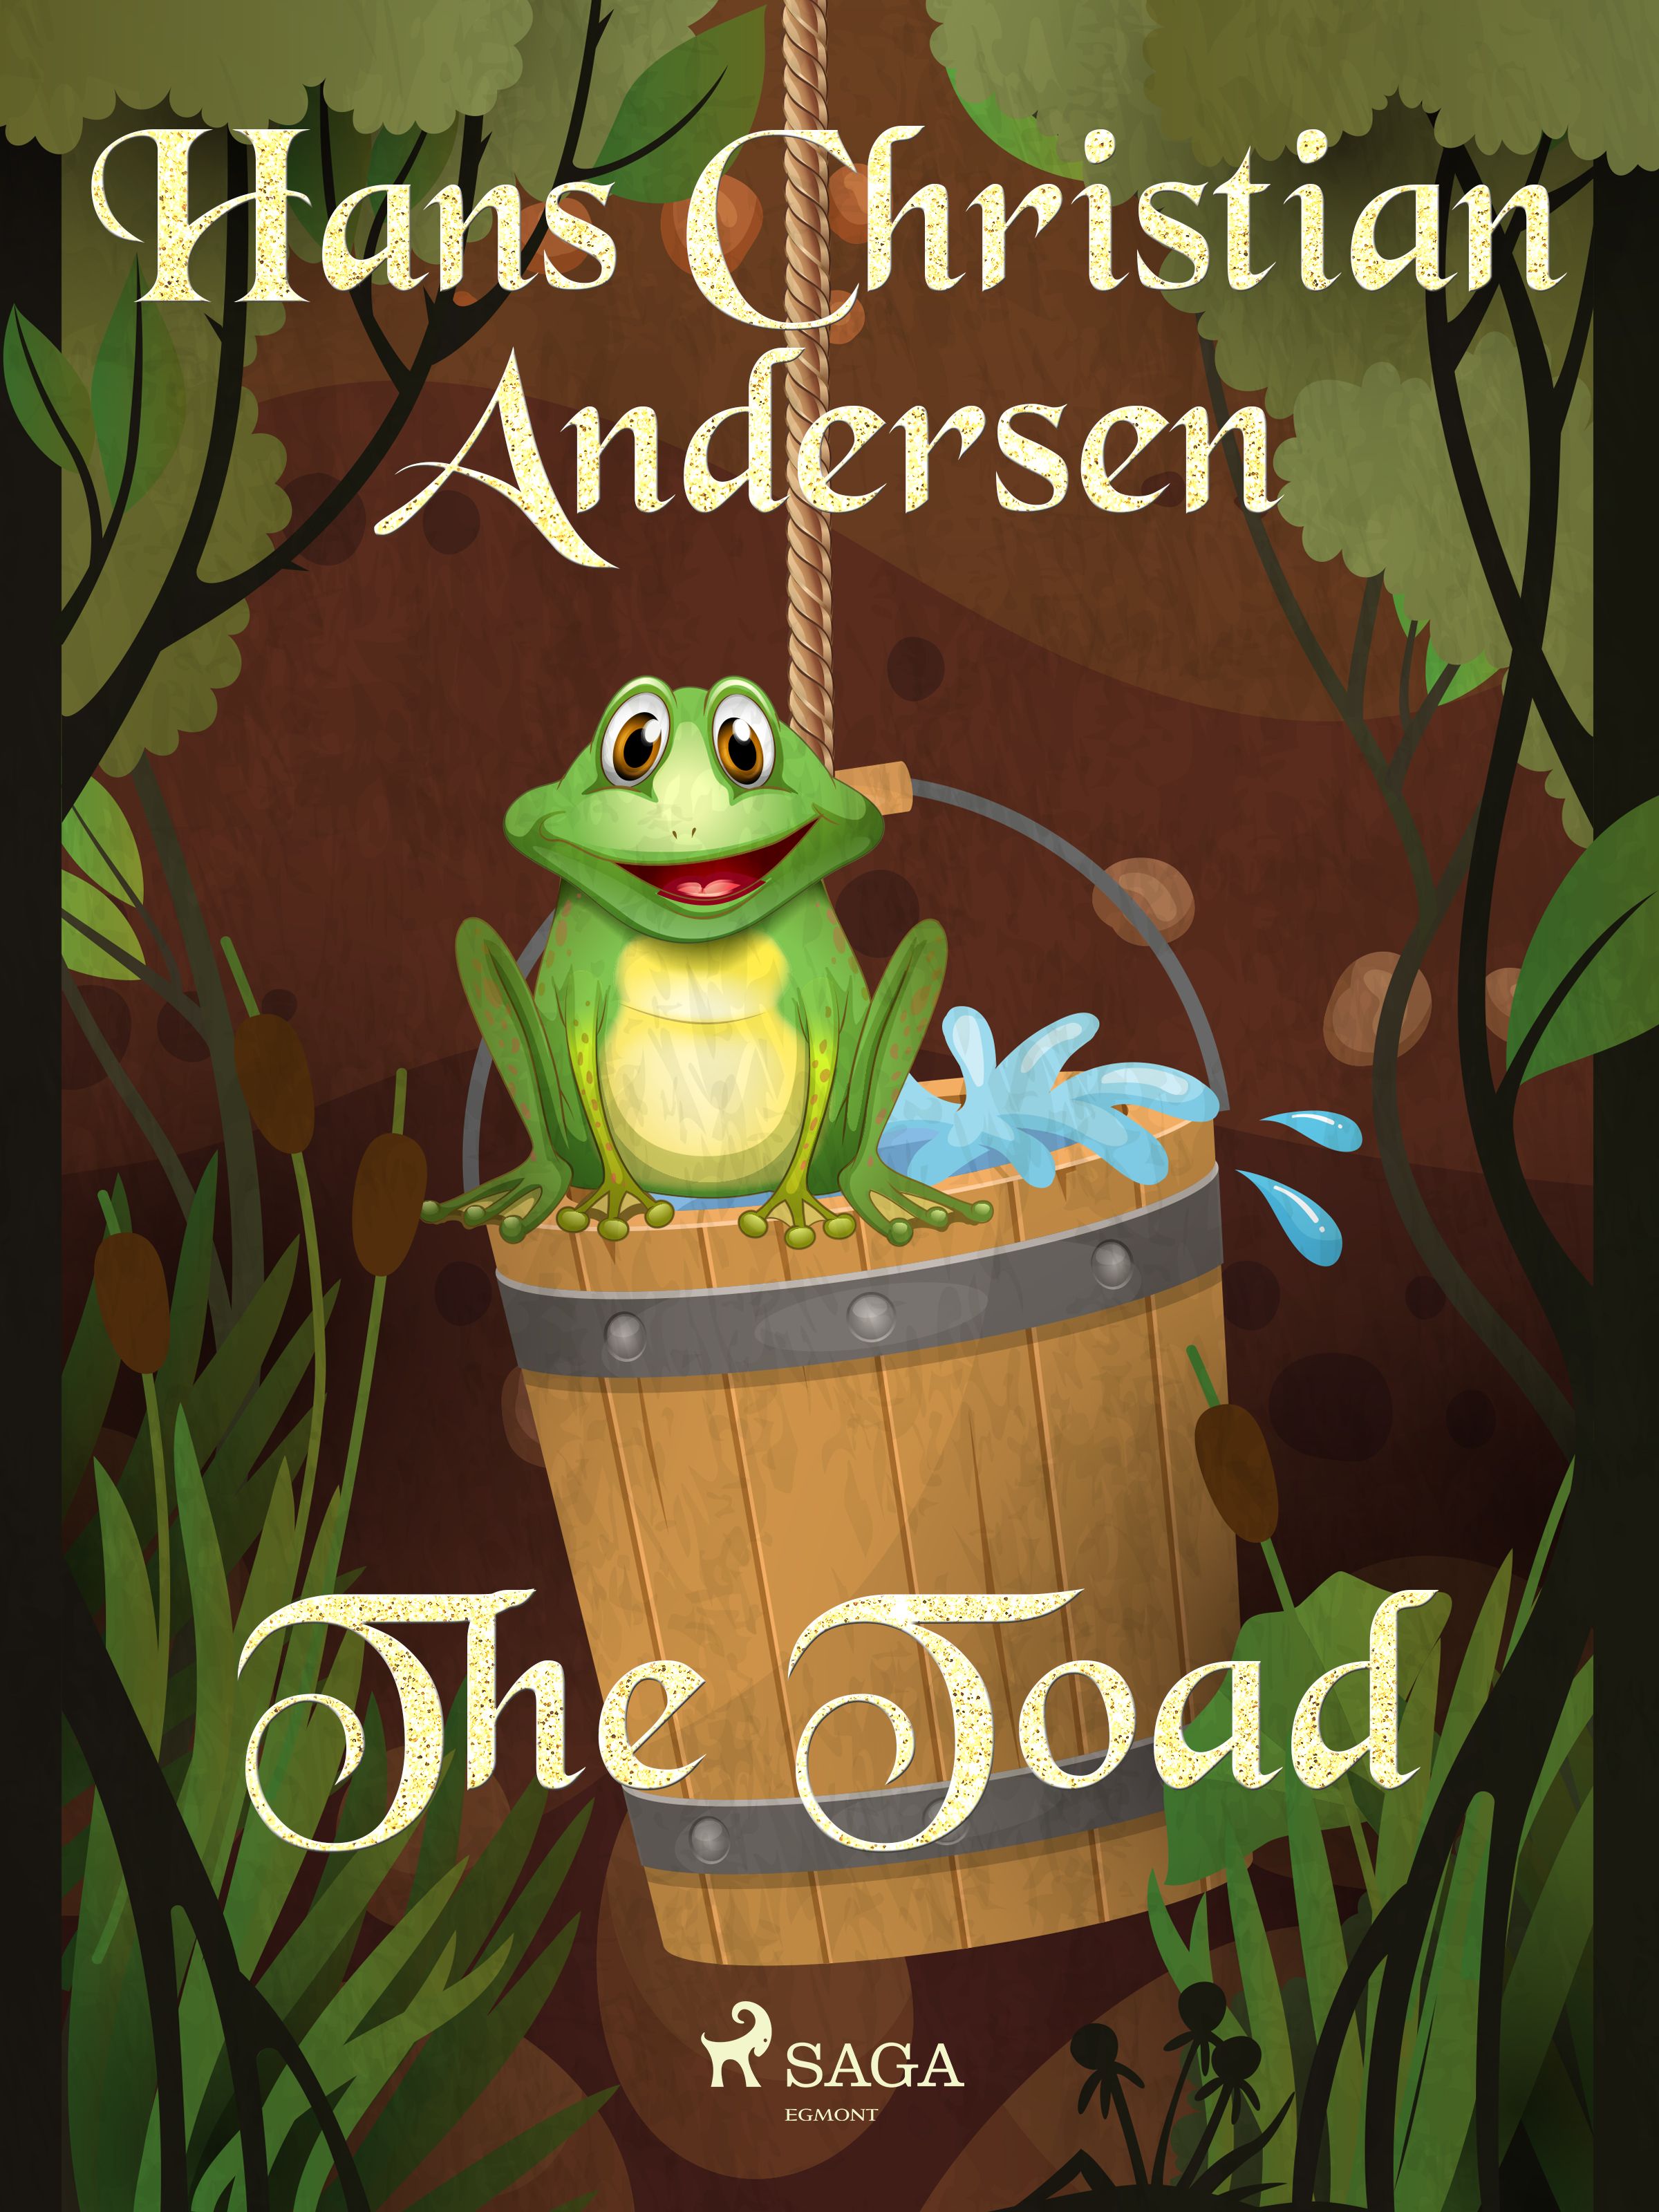 The Toad, e-bog af Hans Christian Andersen